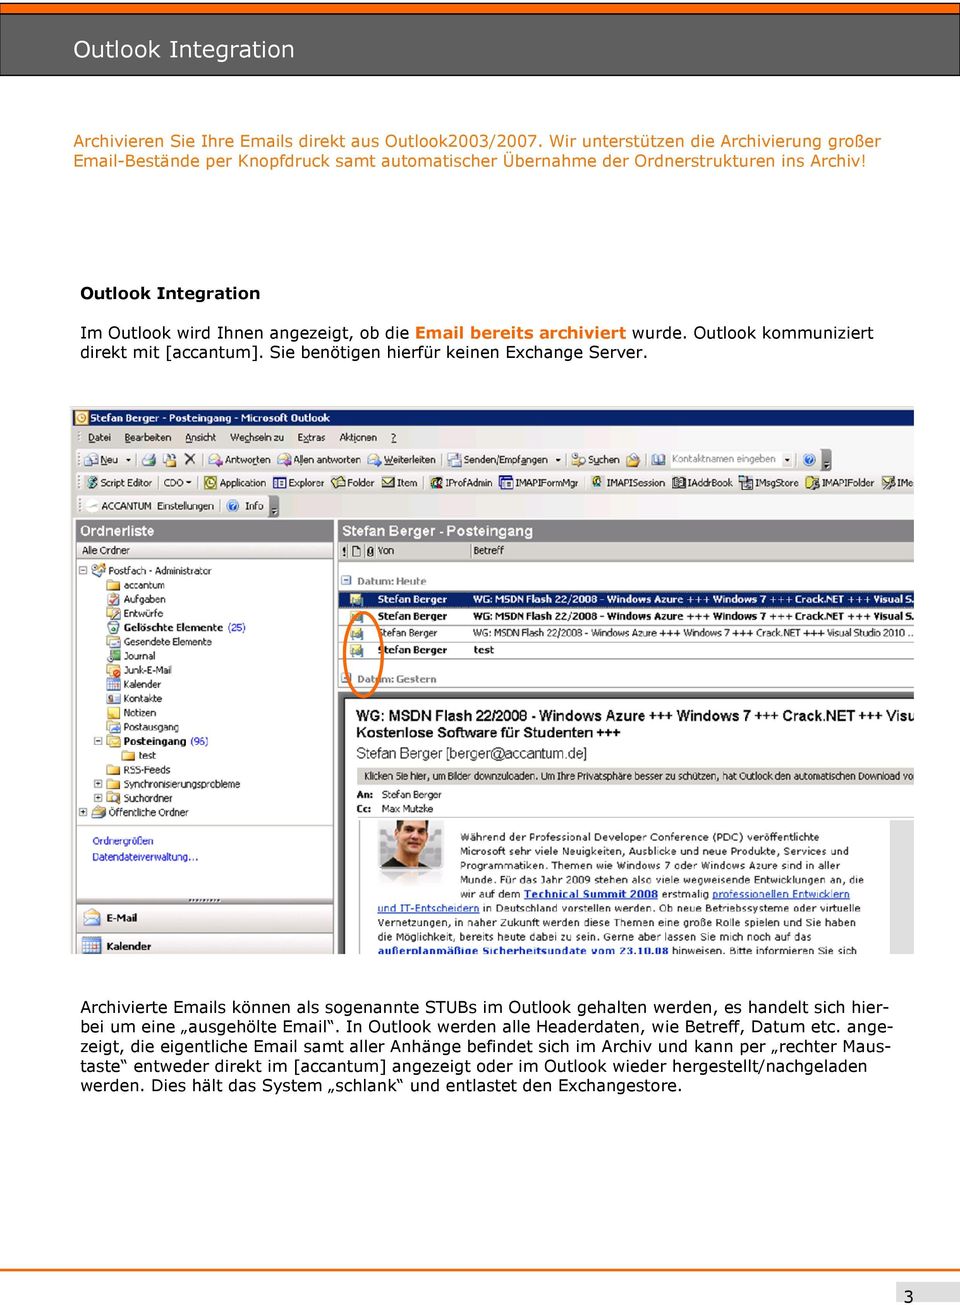 Outlook Integration Im Outlook wird Ihnen angezeigt, ob die Email bereits archiviert wurde. Outlook kommuniziert direkt mit [accantum]. Sie benötigen hierfür keinen Exchange Server.